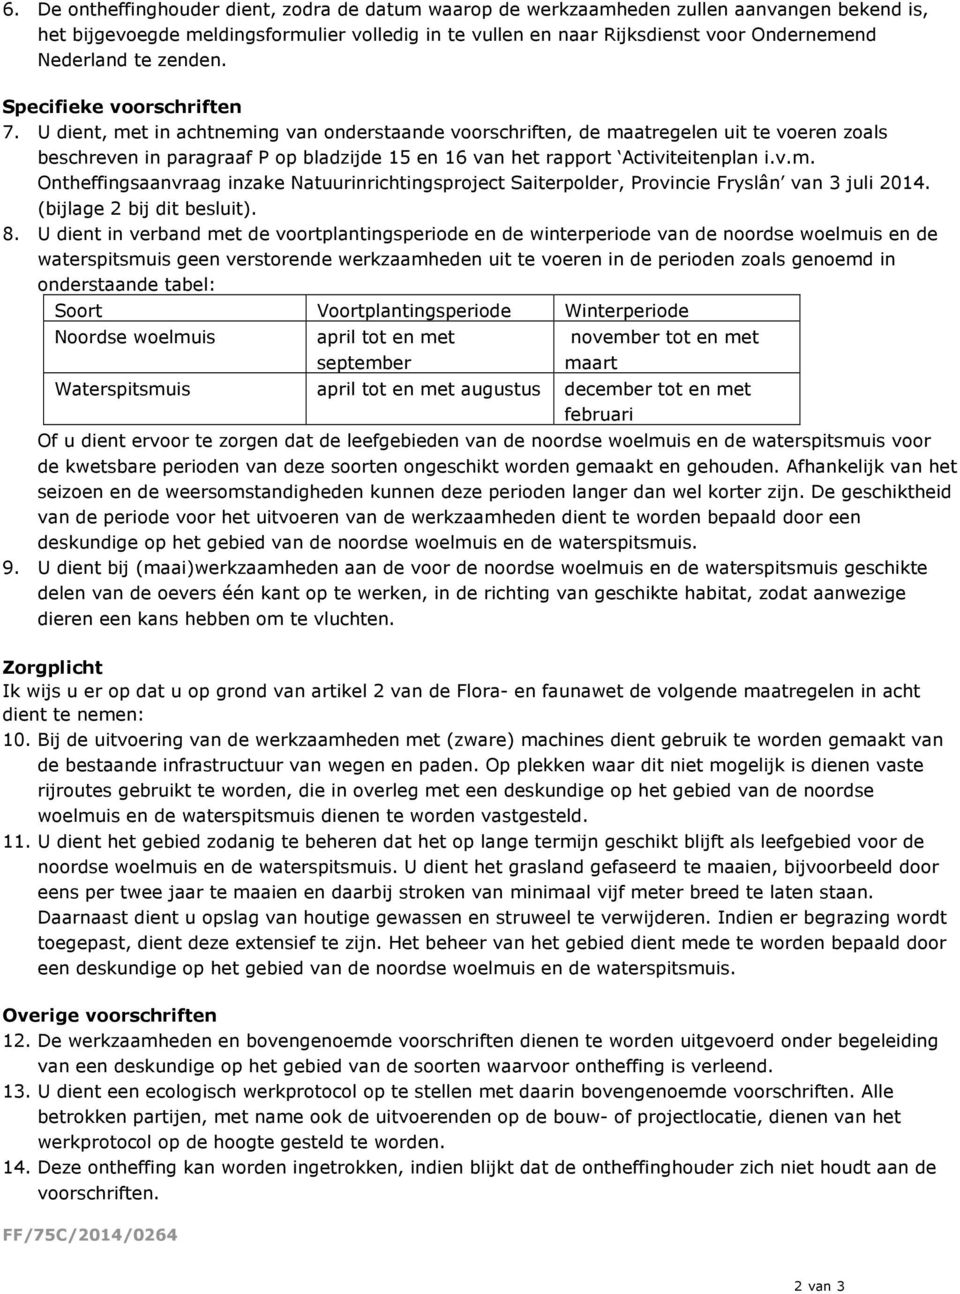 U dient, met in achtneming van onderstaande voorschriften, de maatregelen uit te voeren zoals beschreven in paragraaf P op bladzijde 15 en 16 van het rapport Activiteitenplan i.v.m. Ontheffingsaanvraag inzake Natuurinrichtingsproject Saiterpolder, Provincie Fryslân van 3 juli 2014.